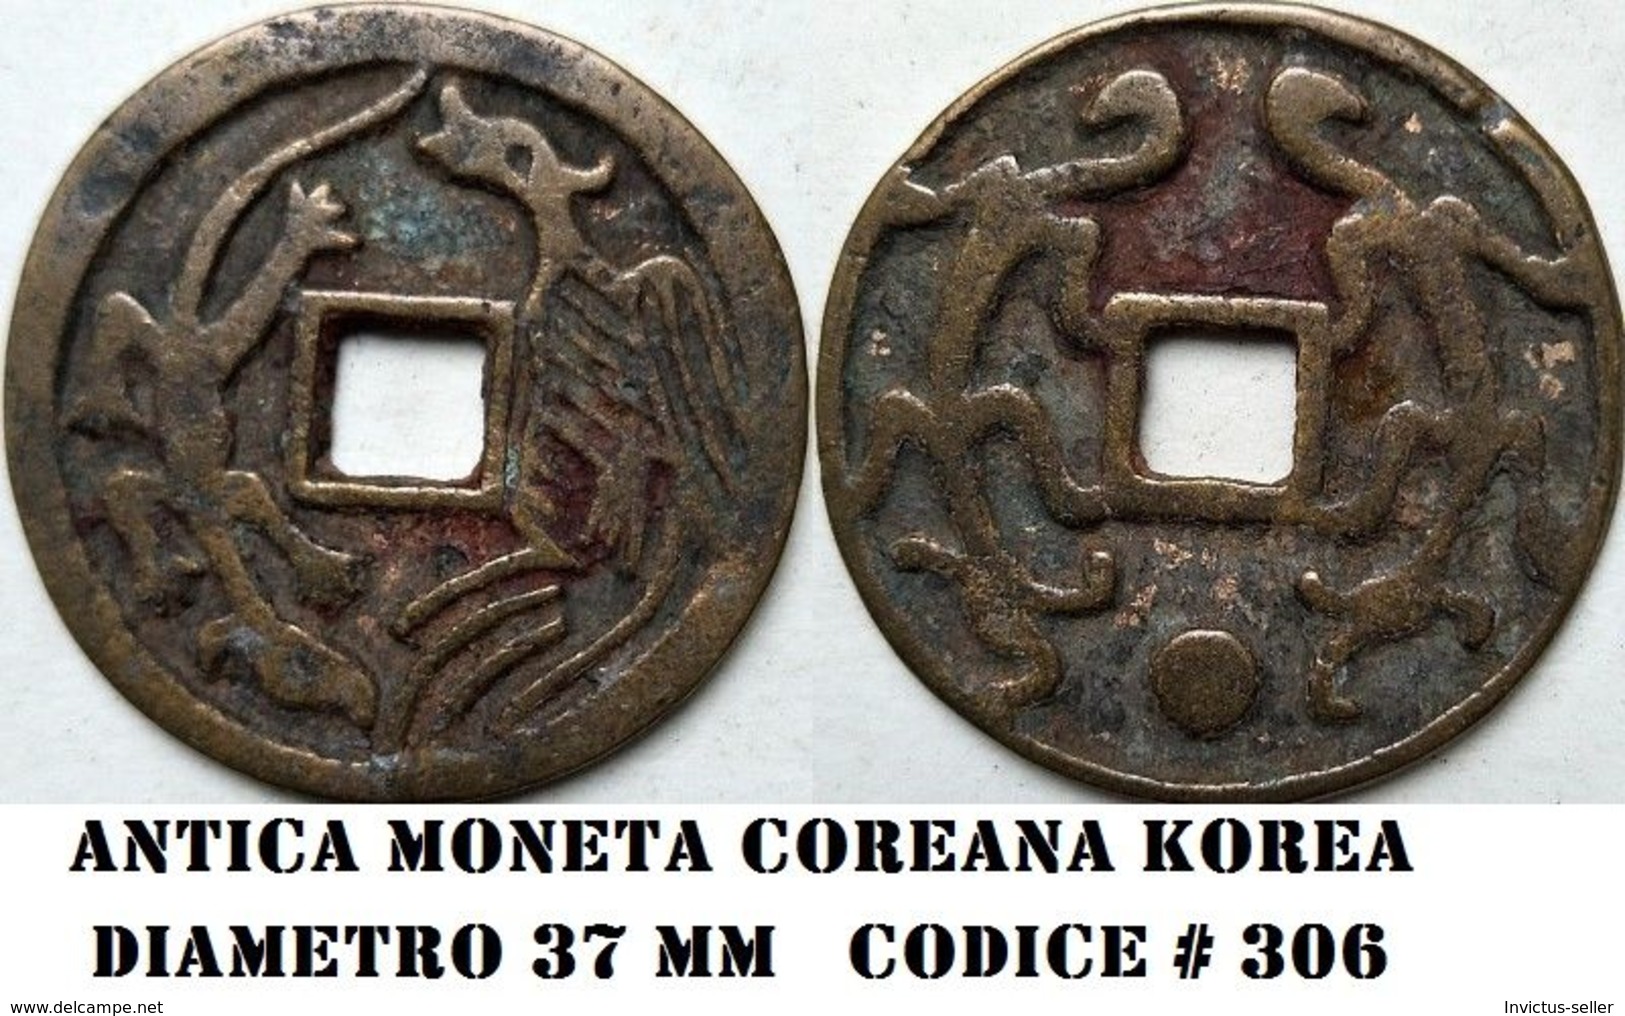 KOREA ANTICA MONETA COREANA PERIODO IMPERIALE IMPERIALE COREANE COINS  PIECES MONET COREA IMPERIAL COD #306 - Korea (Noord)